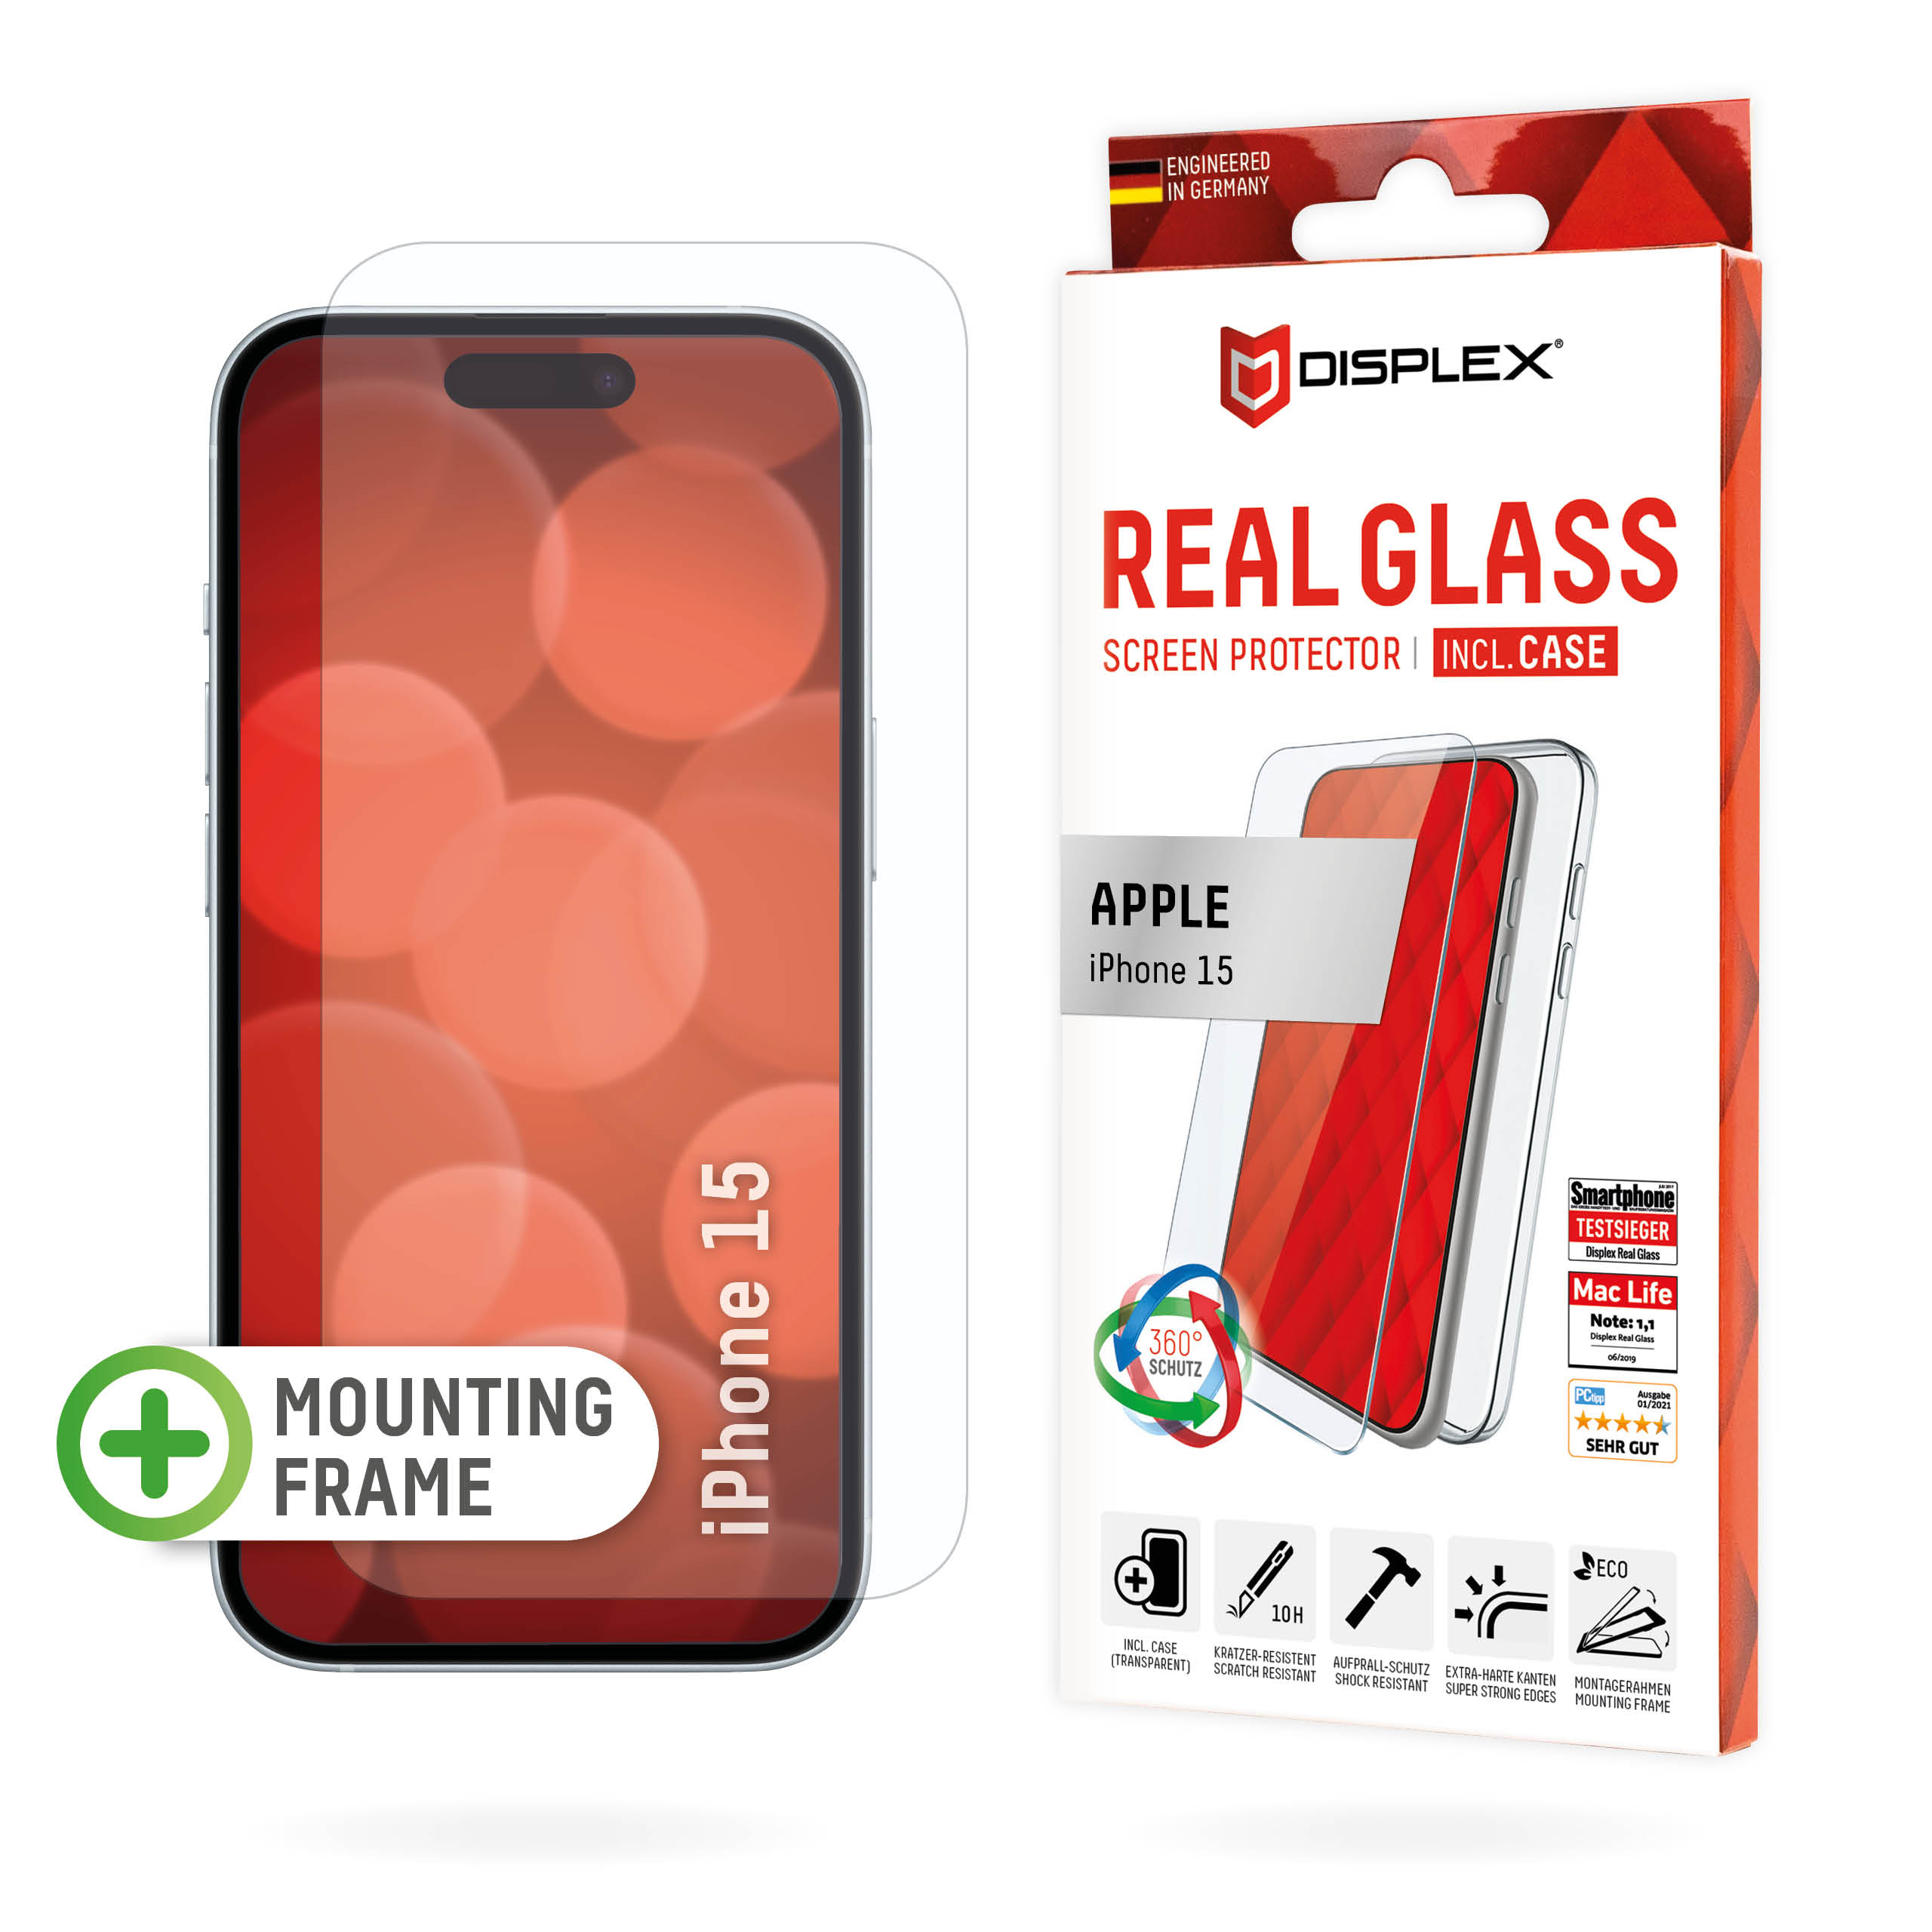 01846-APPLE-iPhone-15-Real-Glass-Case-2D_ENERQqi9lU0rAXP